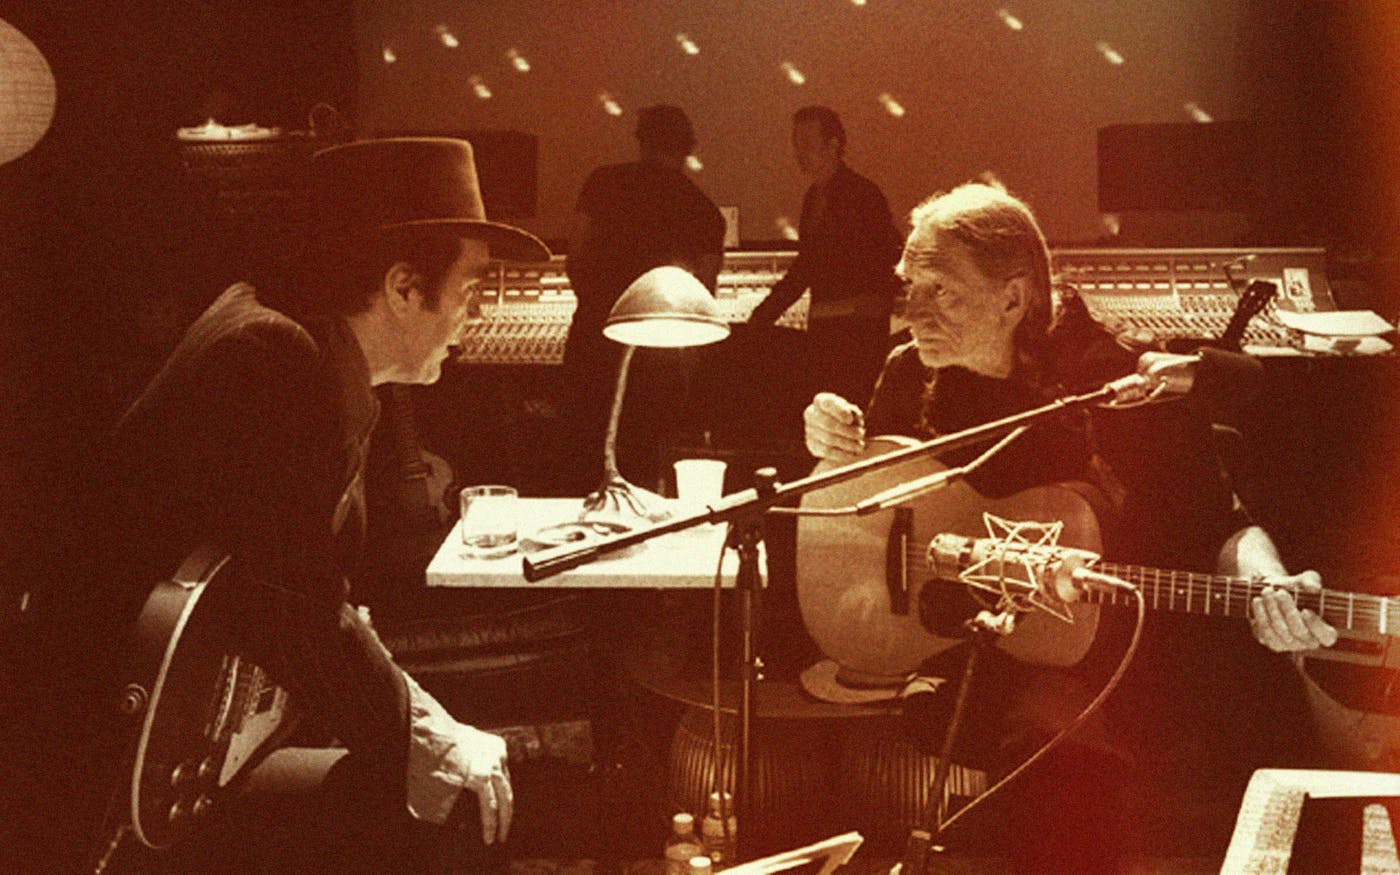 Daniel Lanois on Recording Willie Nelson's Landmark Album 'Teatro